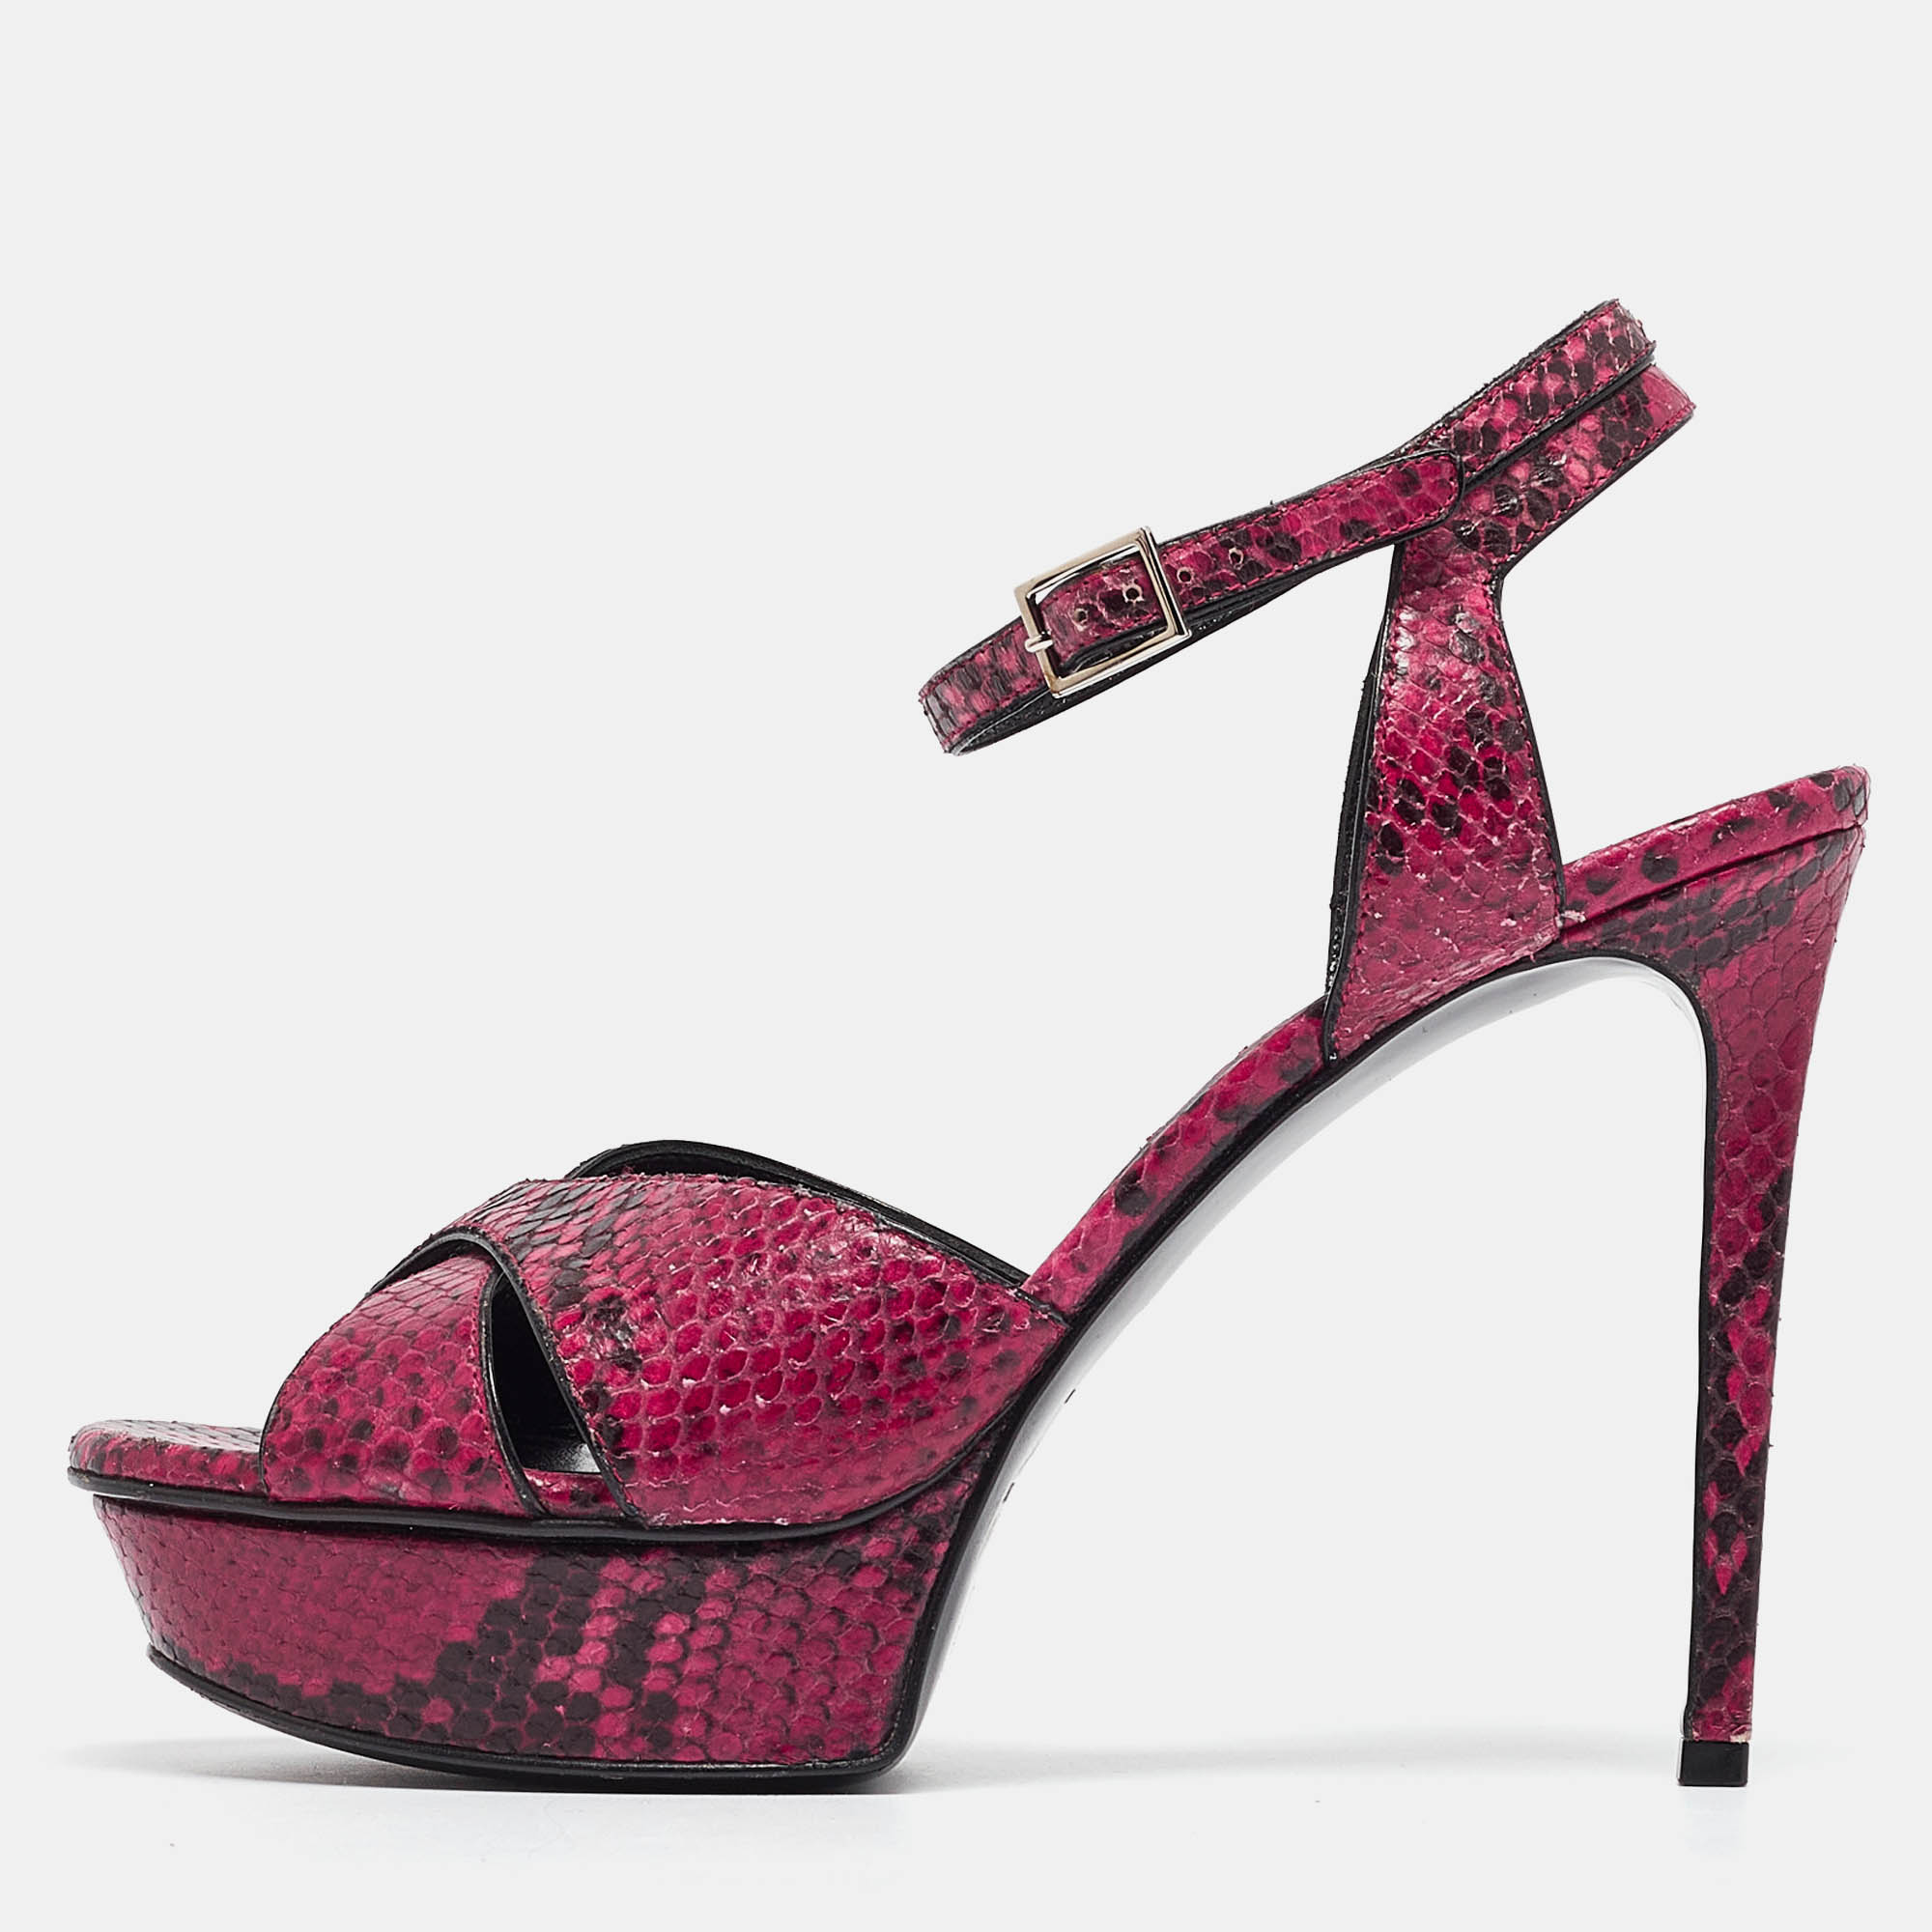 Saint laurent paris saint laurent pink/black embossed snakeskin tribute sandals size 38